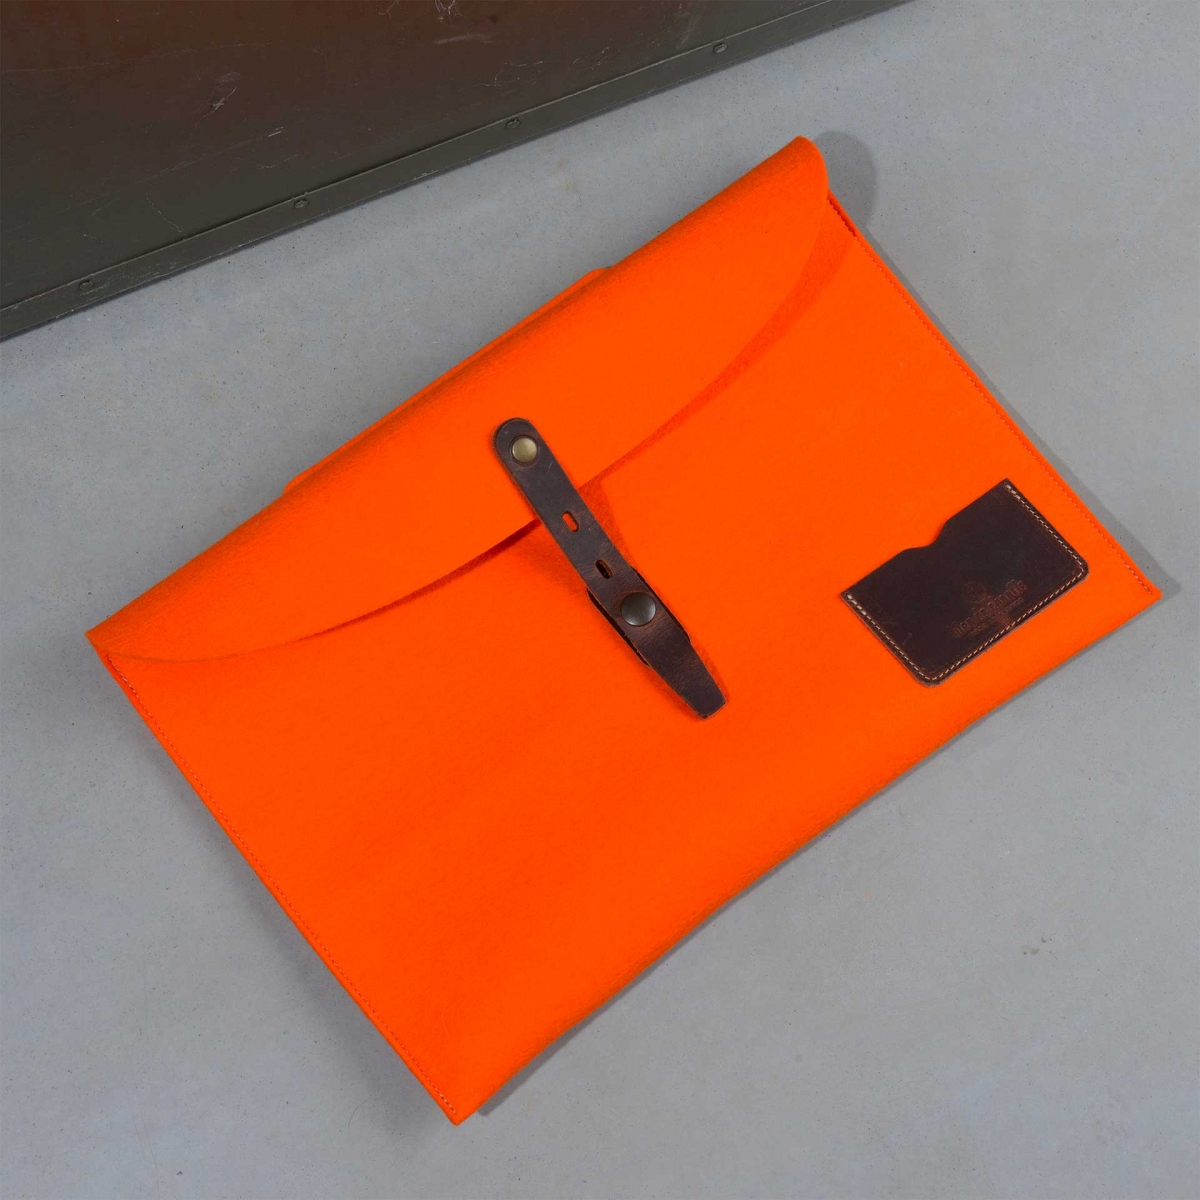 Misha Laptop 13 - Orange felt I Made in France